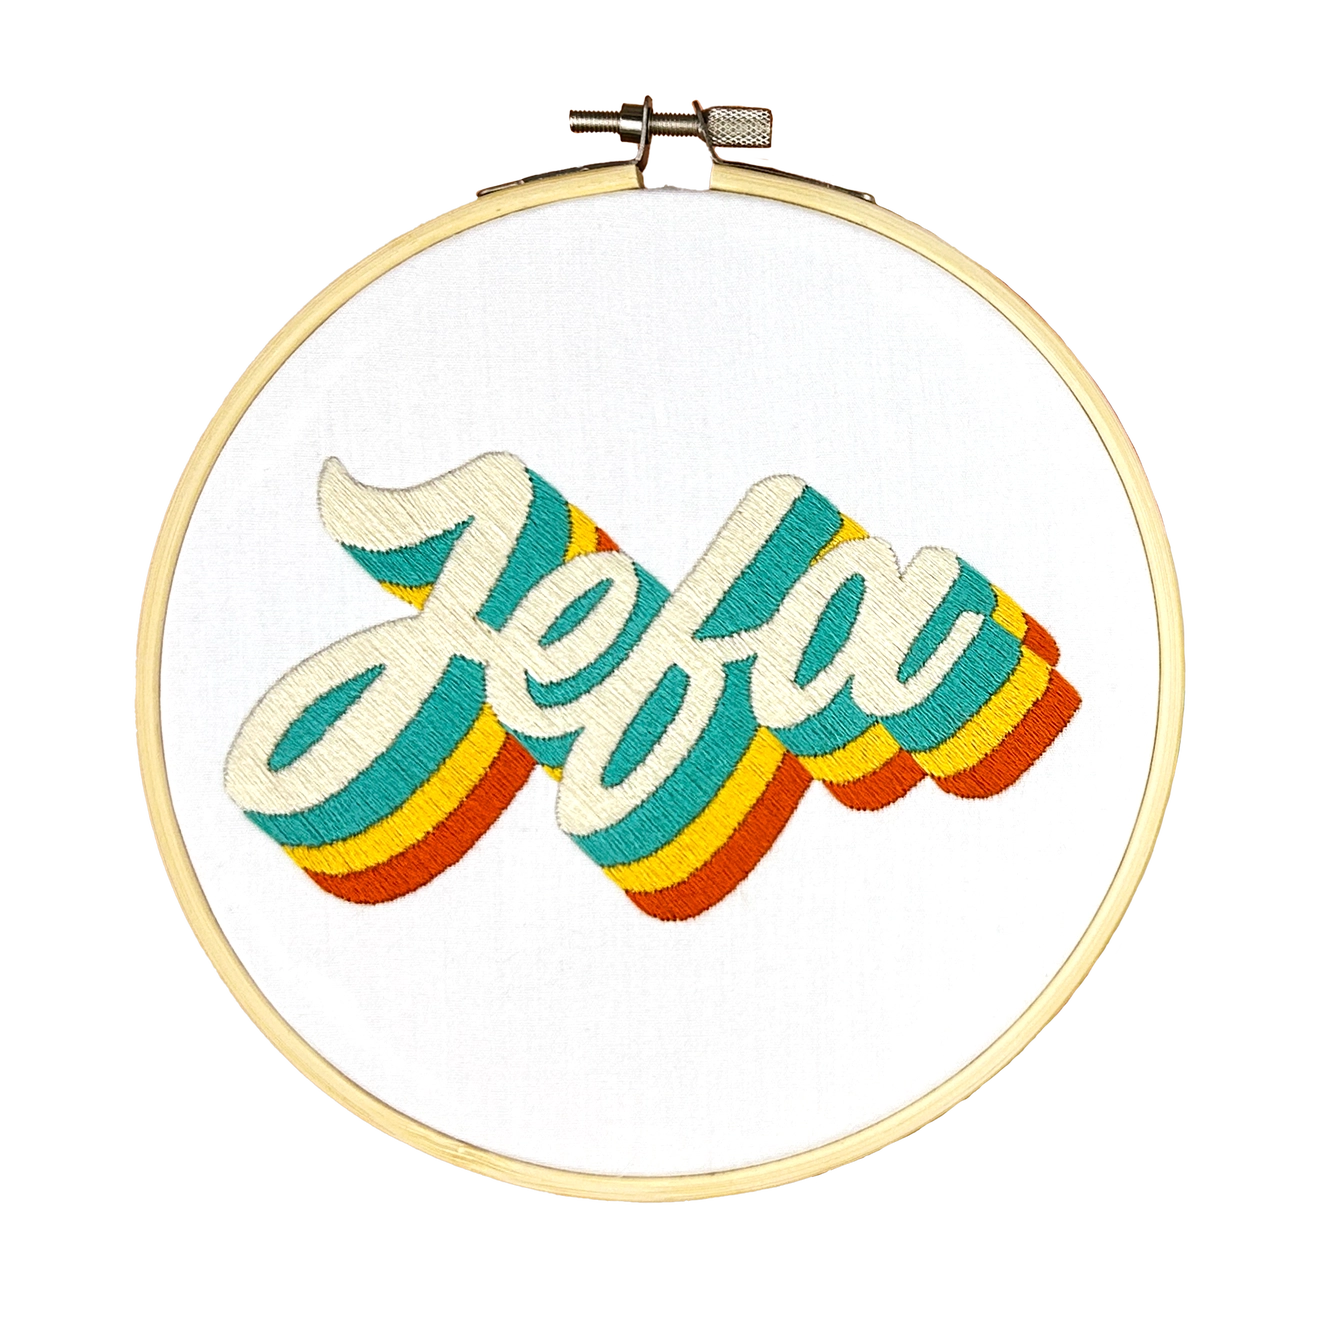 Jefa Embroidery Kit - Las Ofrendas 